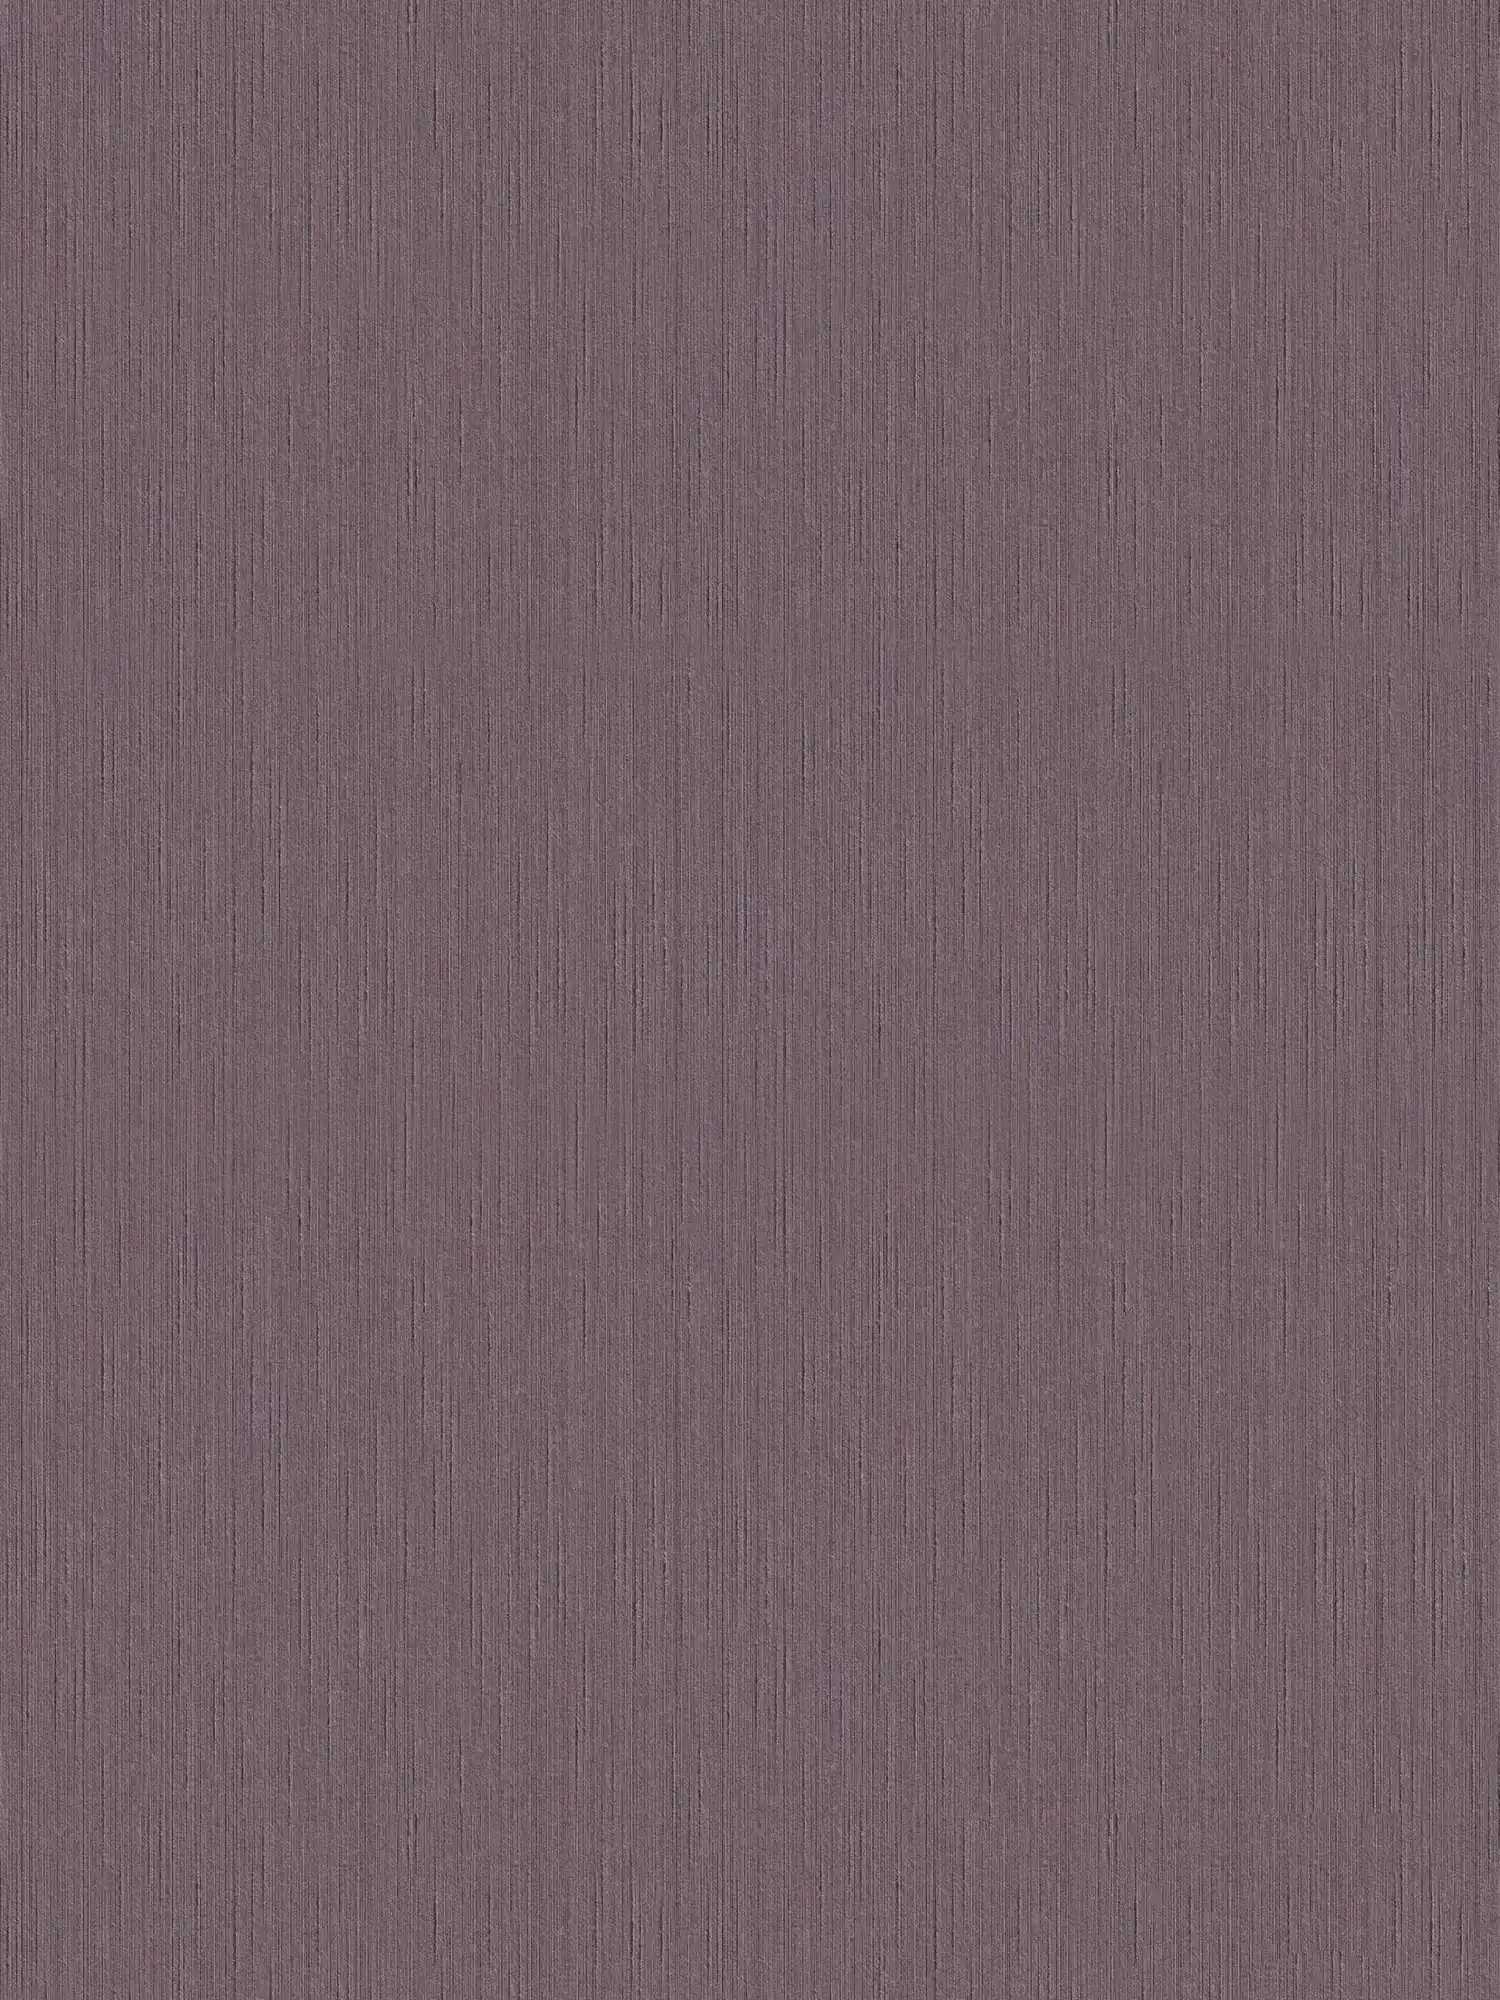 Papier peint mauve foncé avec structure naturelle - lilas, violet
